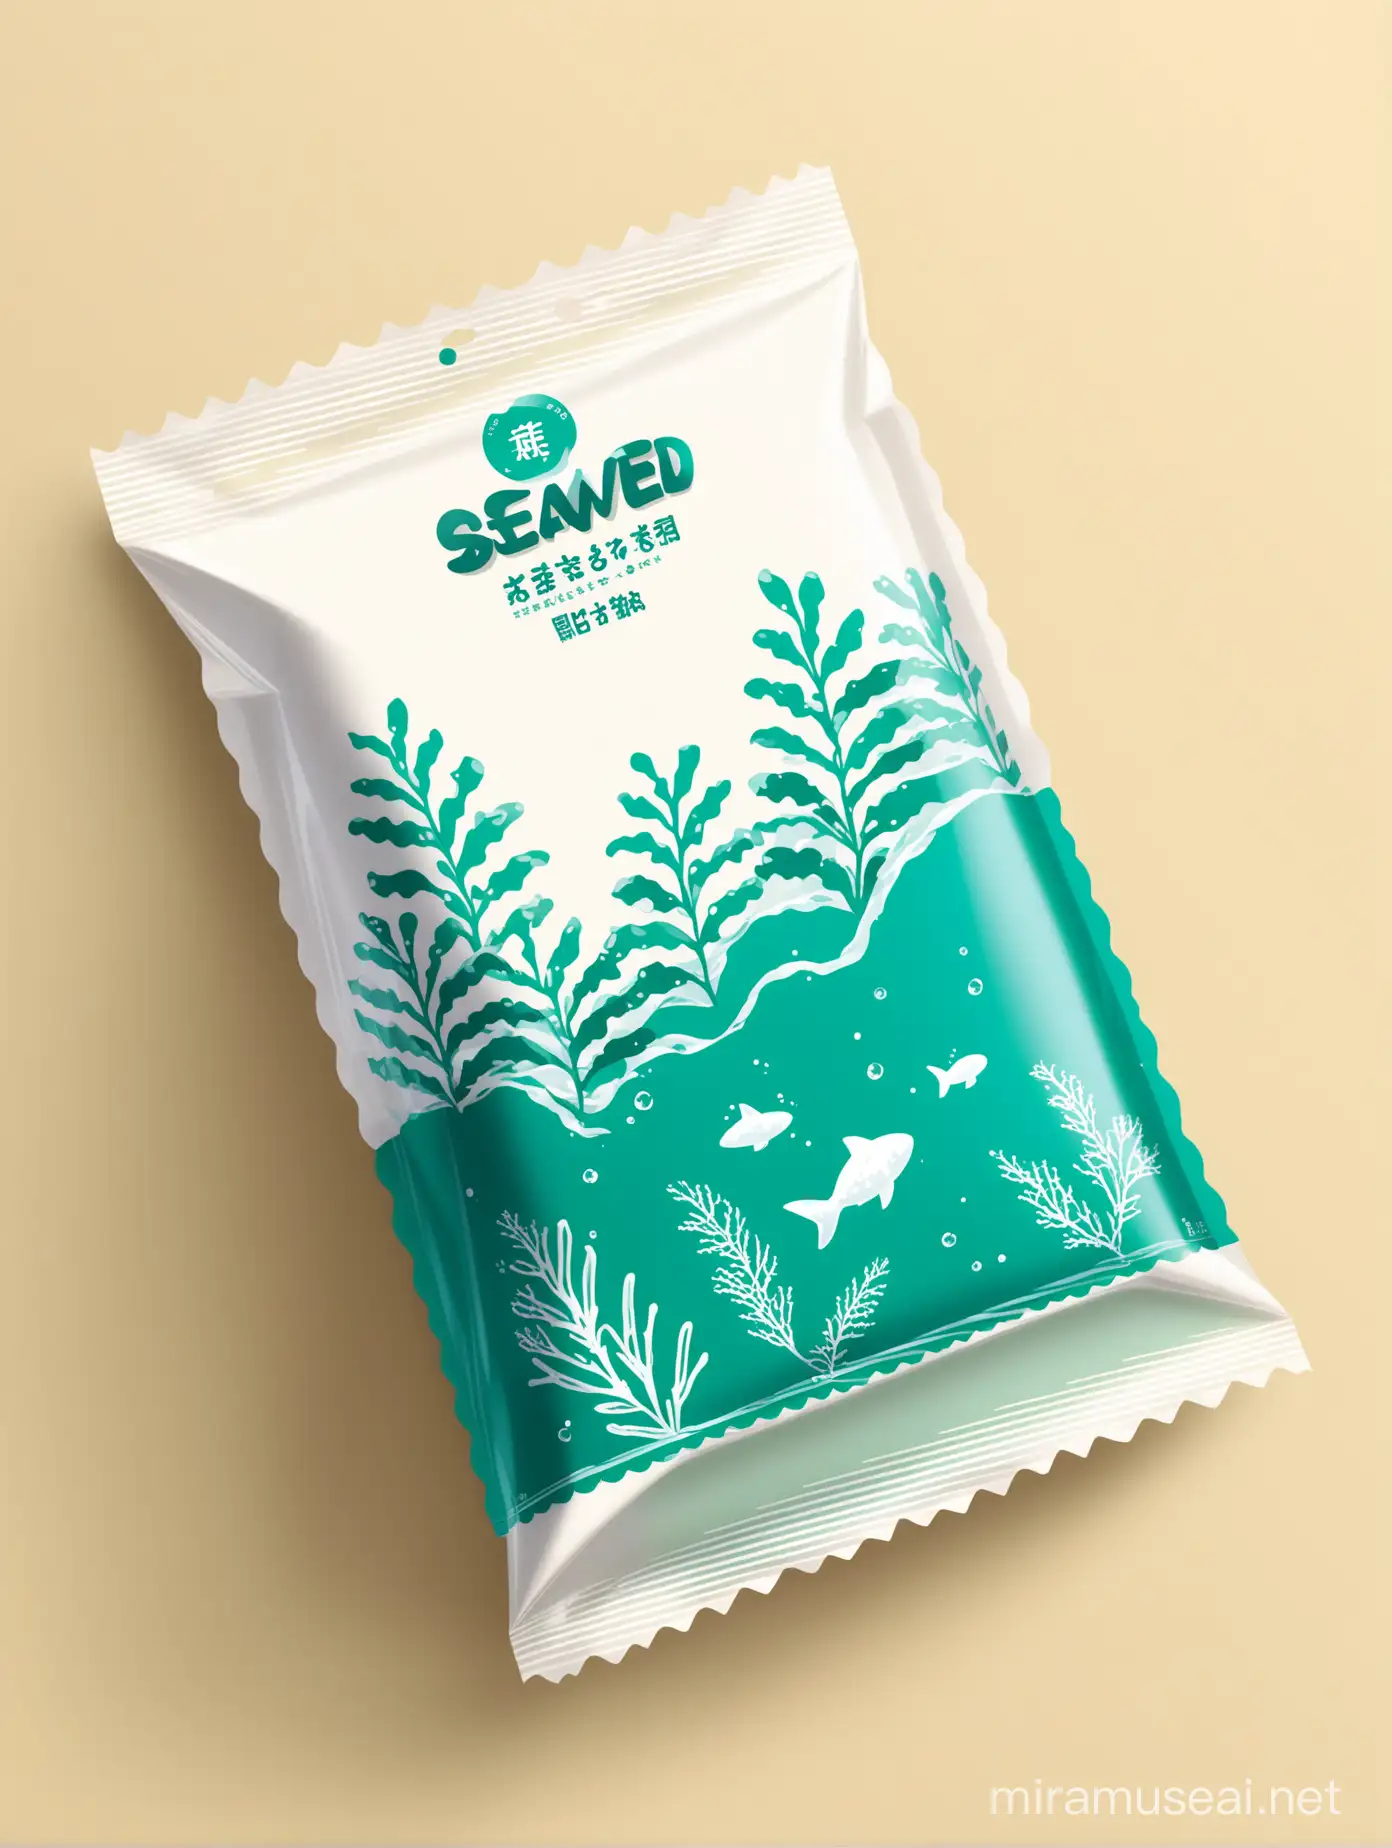 食品类PE膜外包装设计，蓝色绿色白色撞色，有少量海藻类植物的图案，简约 可爱